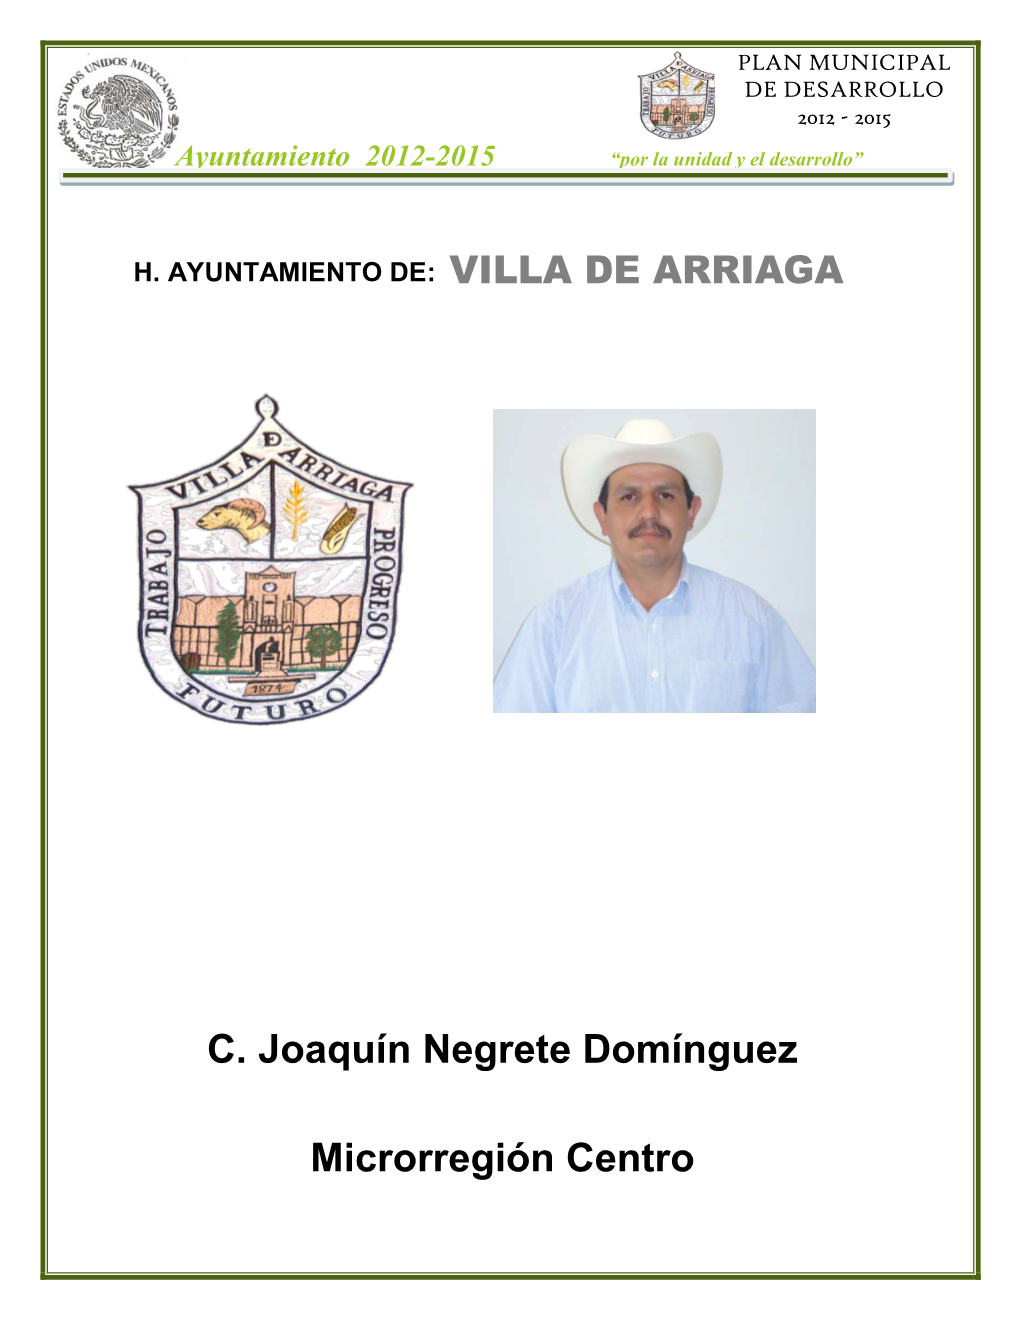 C. Joaquín Negrete Domínguez Microrregión Centro